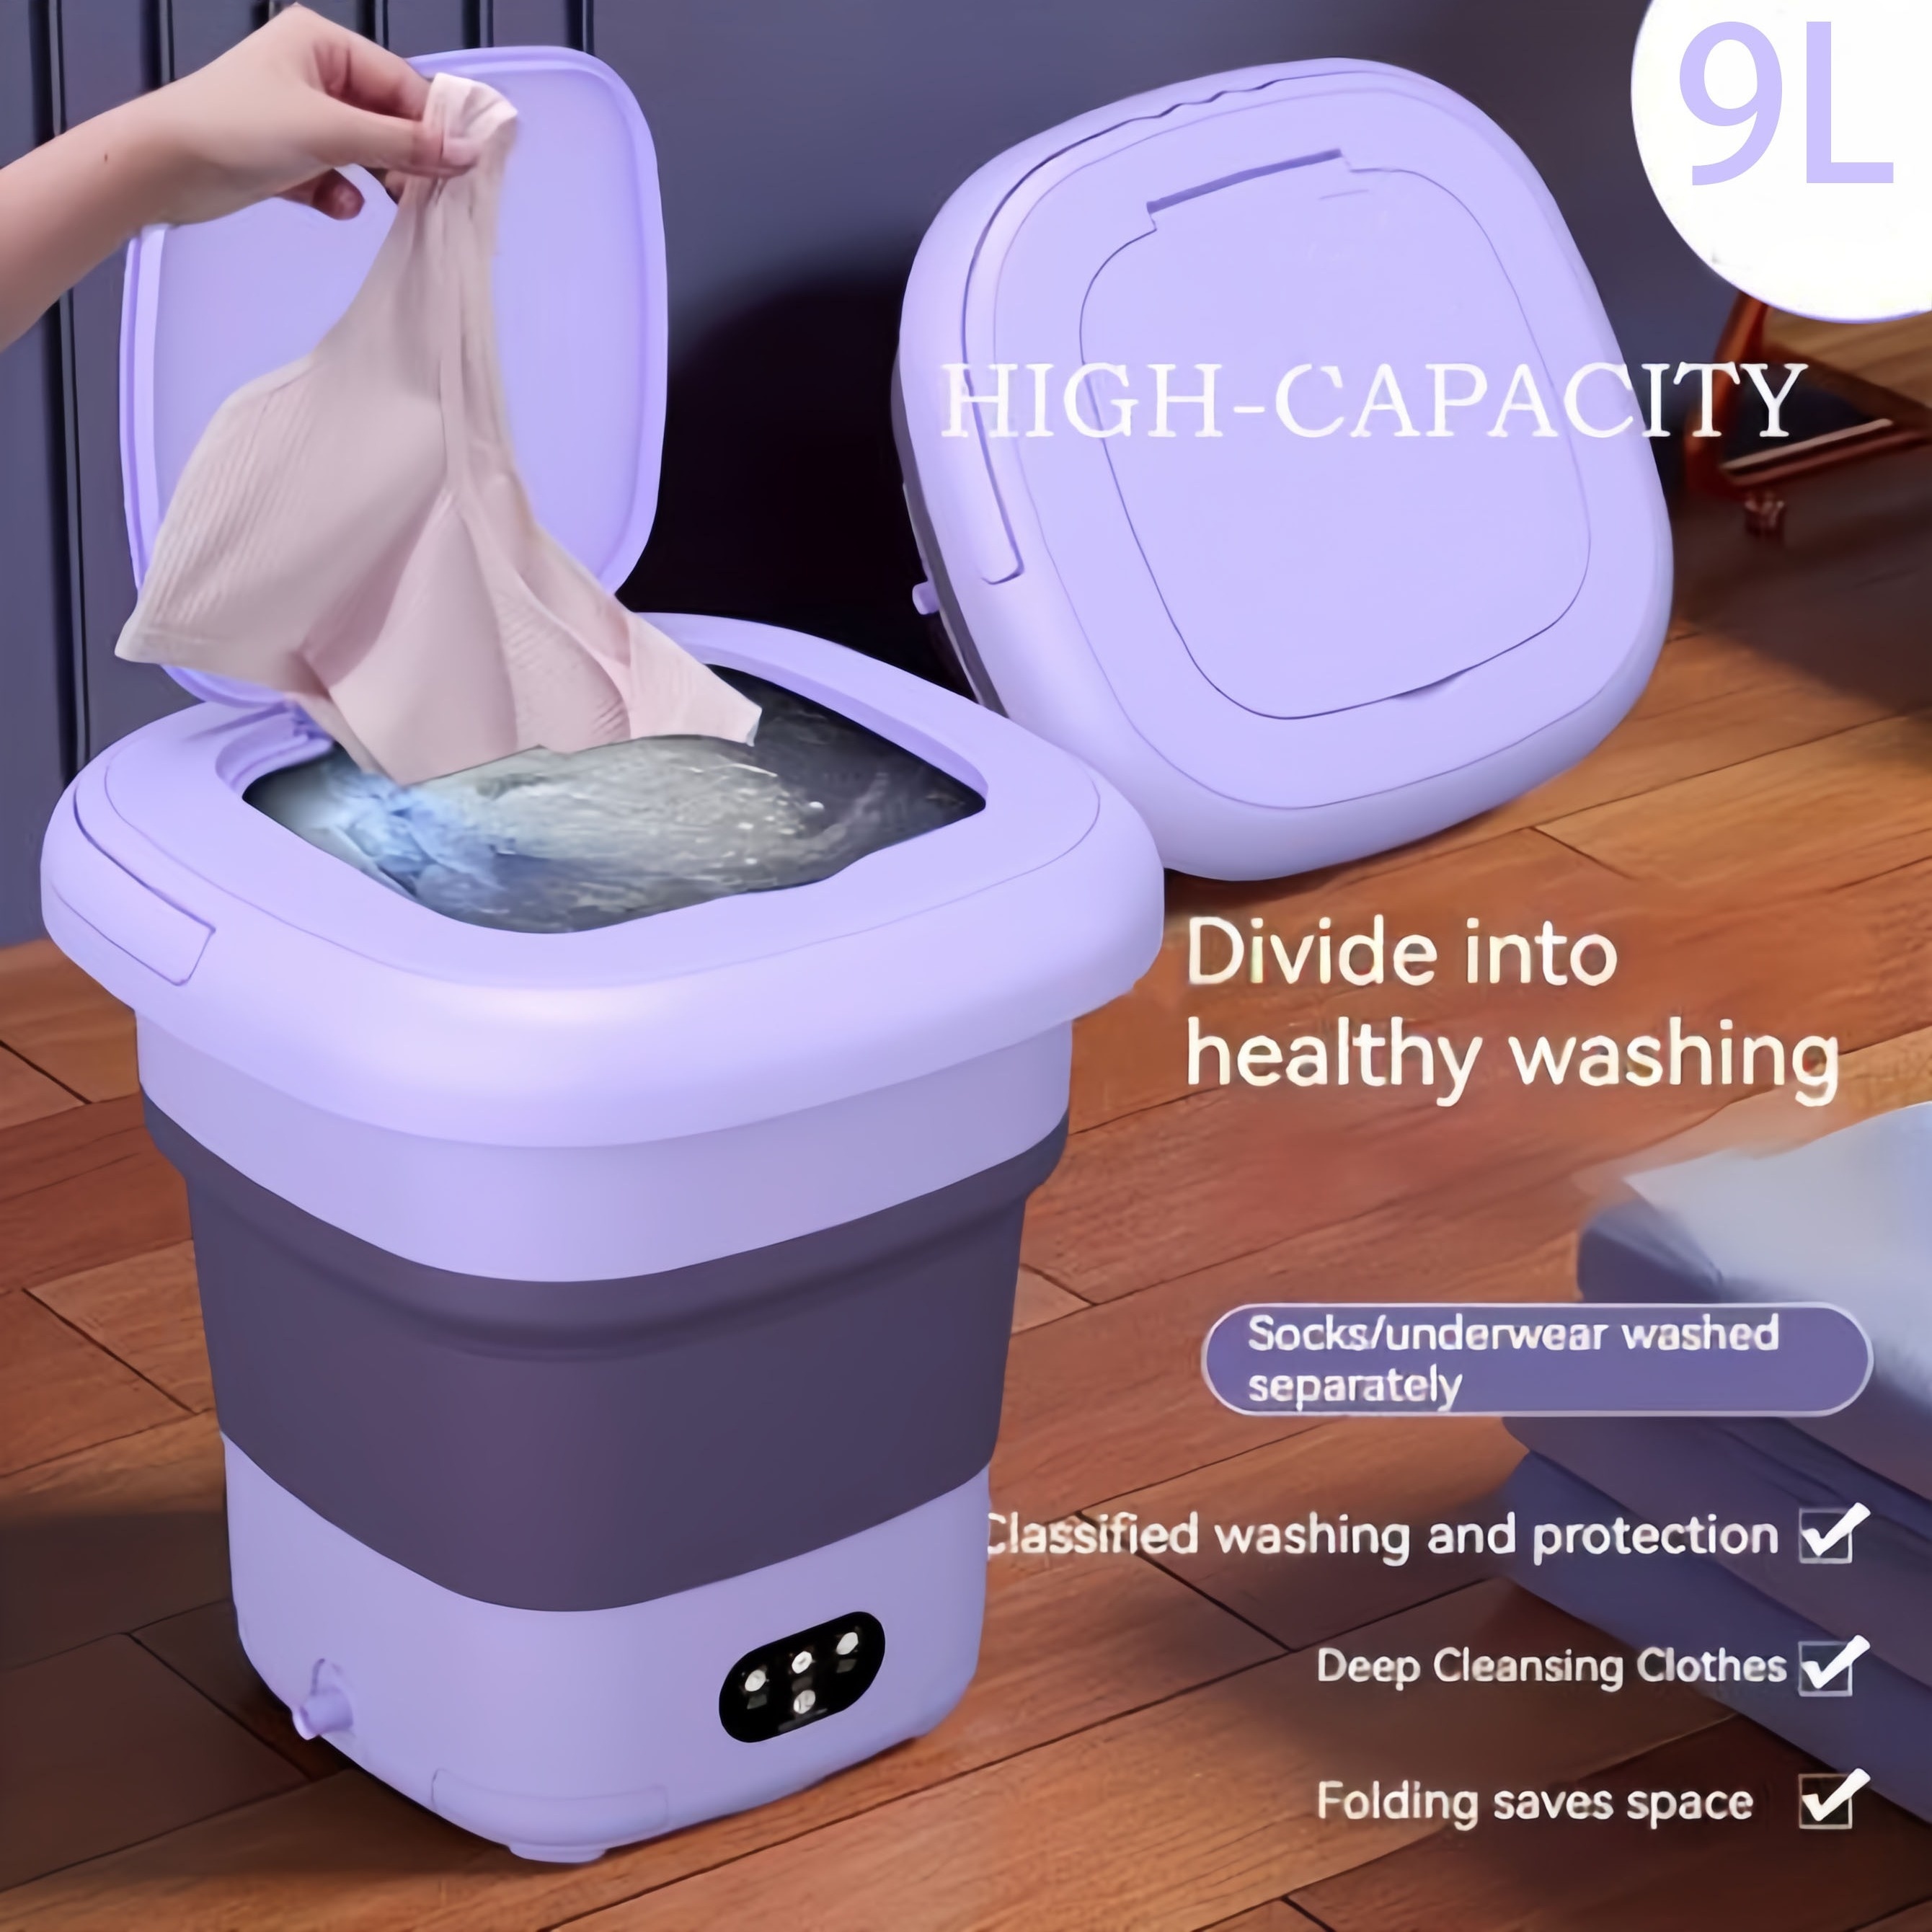 Lavadora plegable MOYU - Lavadora portátil para ropa de bebé, niñas,  calcetines, ropa interior, toallas, la lavadora adecuada para apartamentos